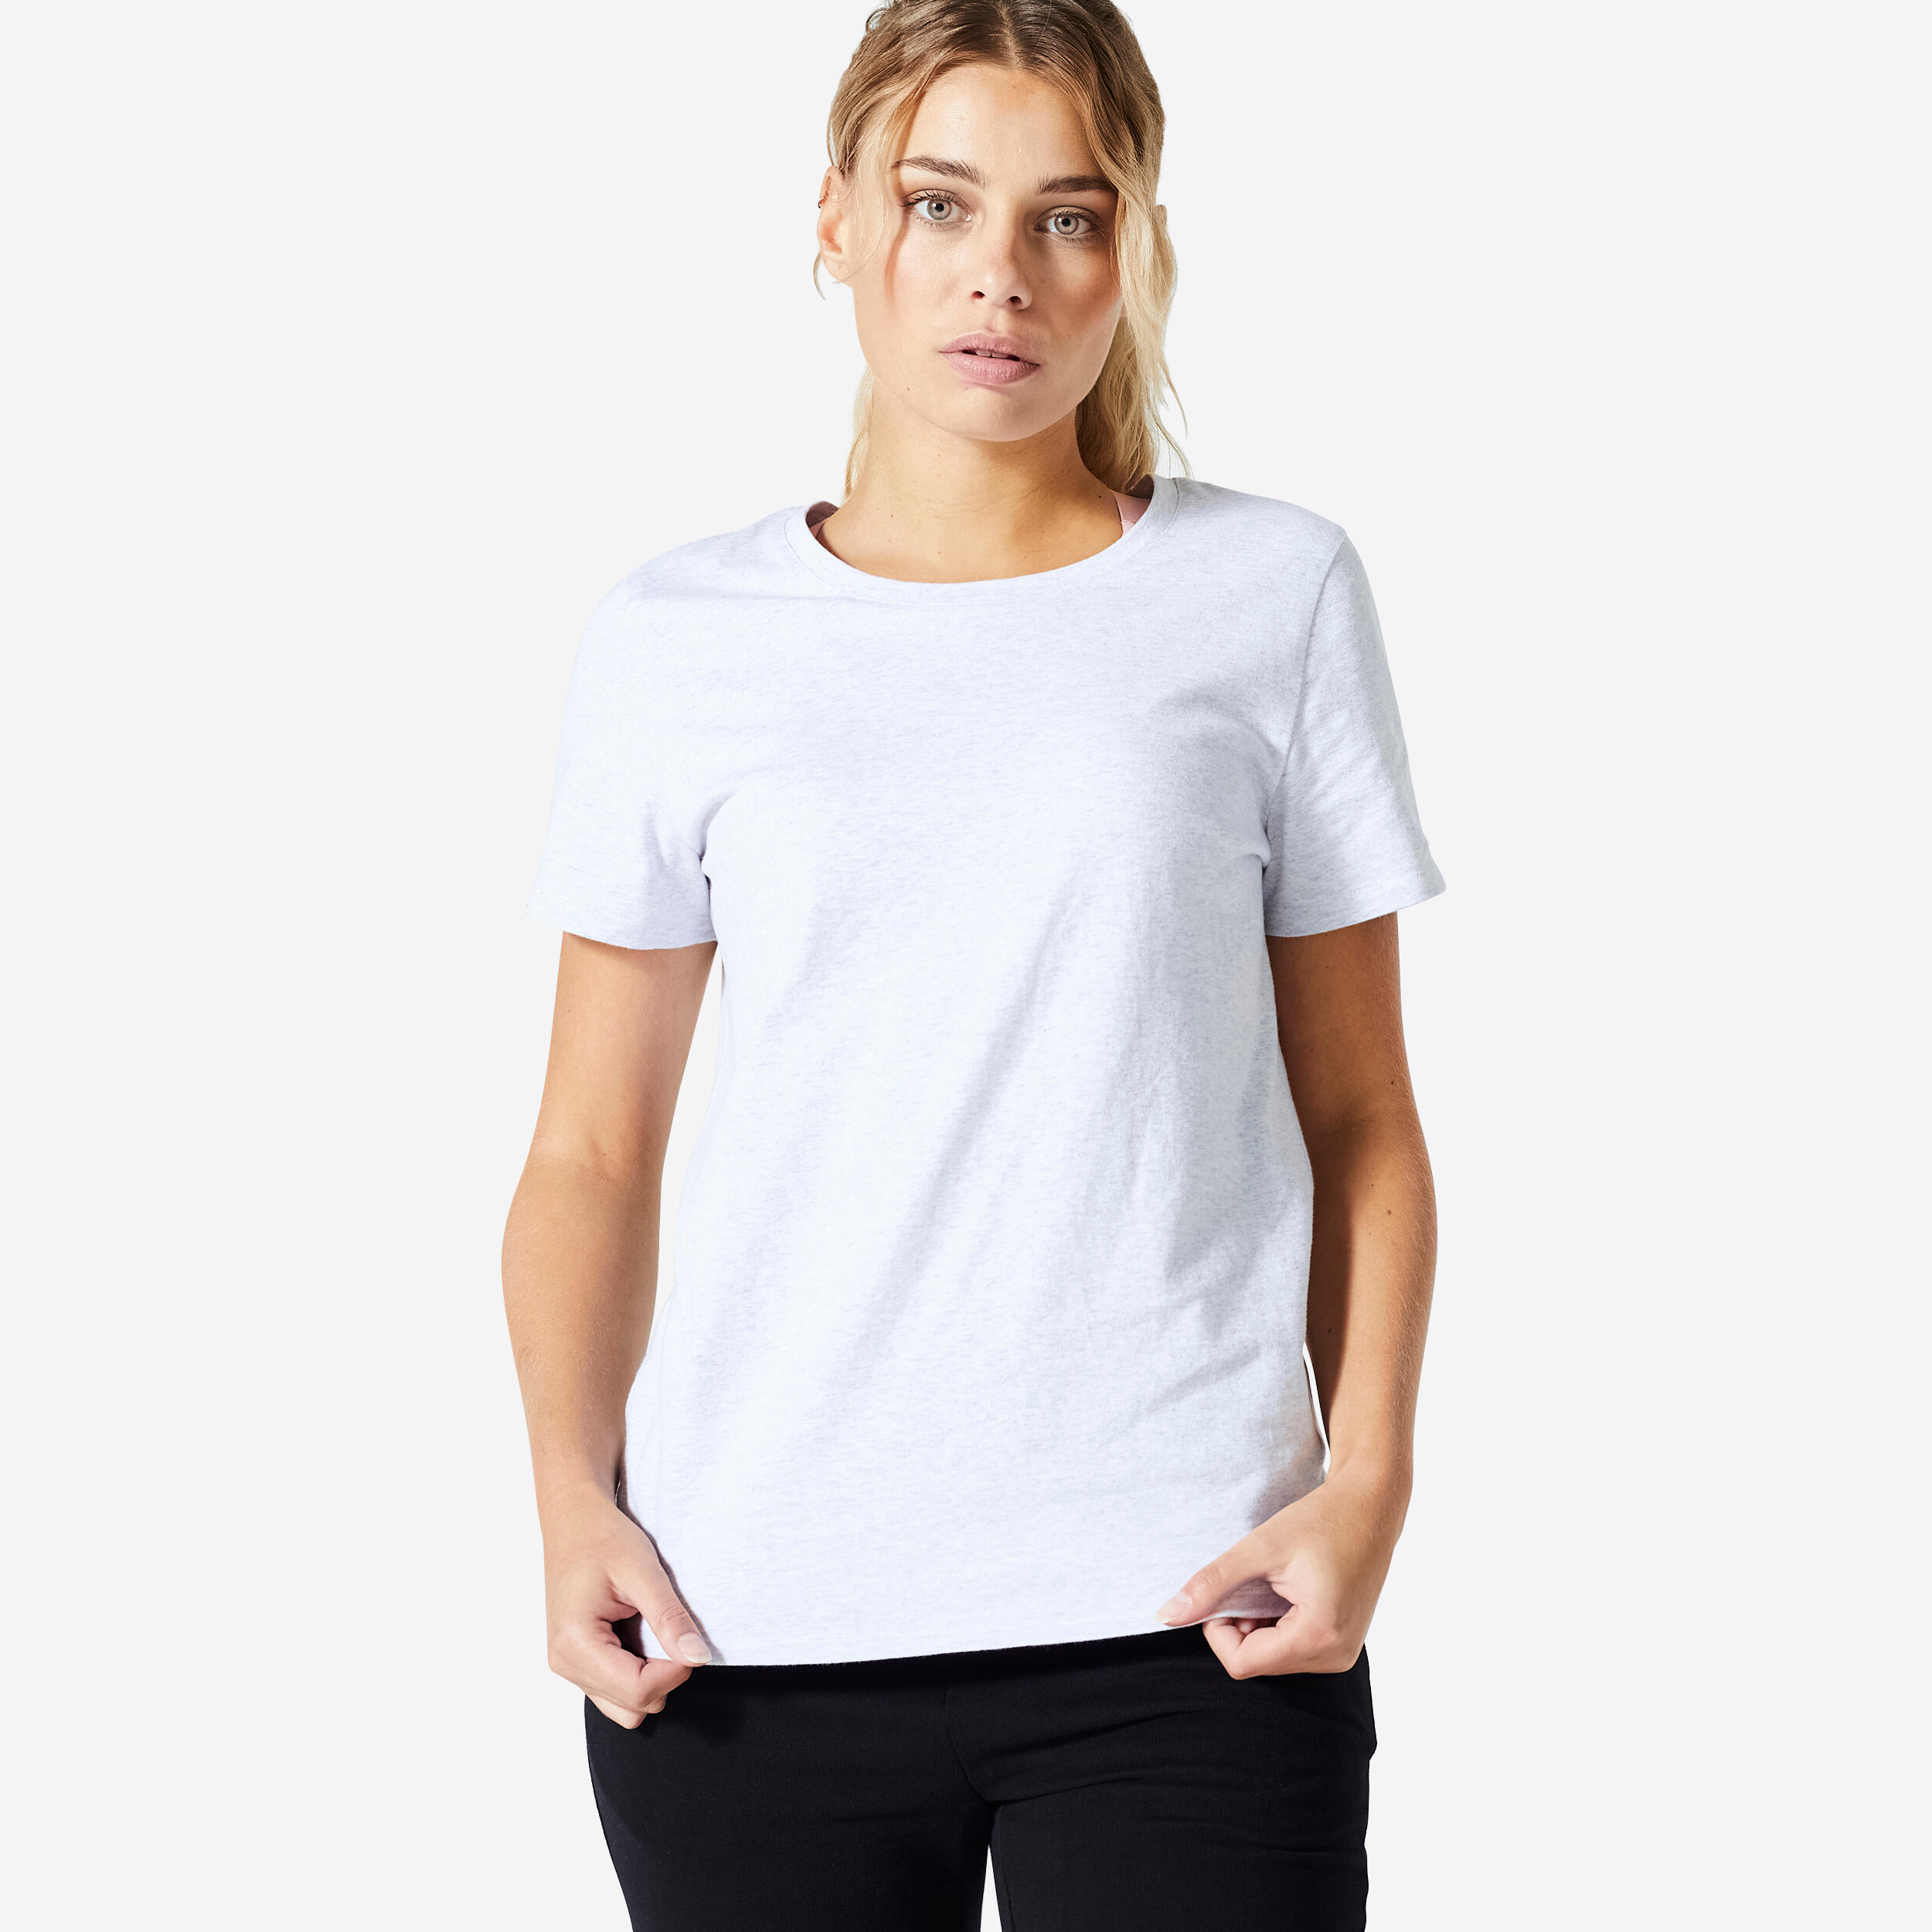 Women's Fitness T-Shirt 500 Essentials - Light Grey 1/5